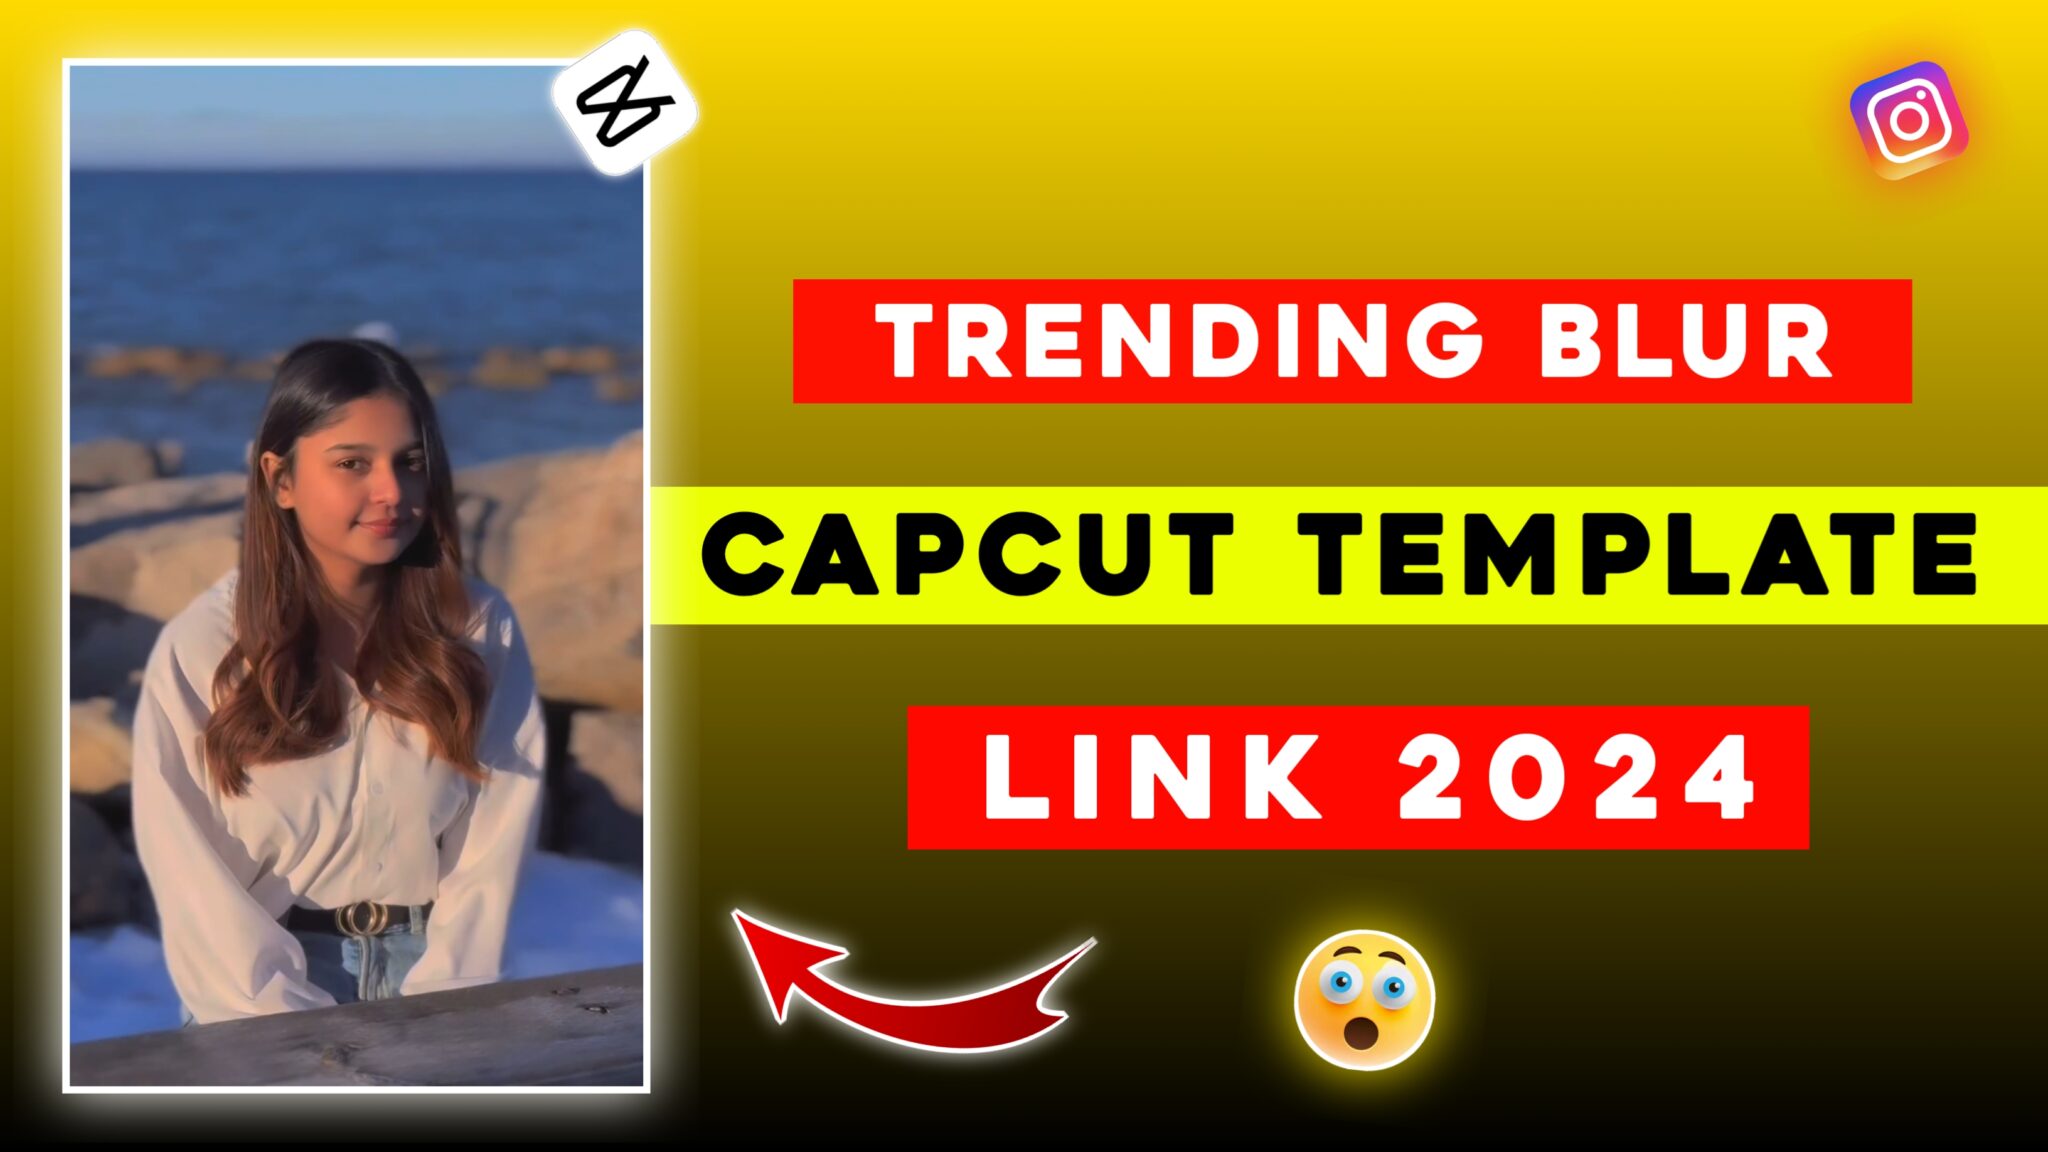 Trending Blur Capcut Template Link 2024